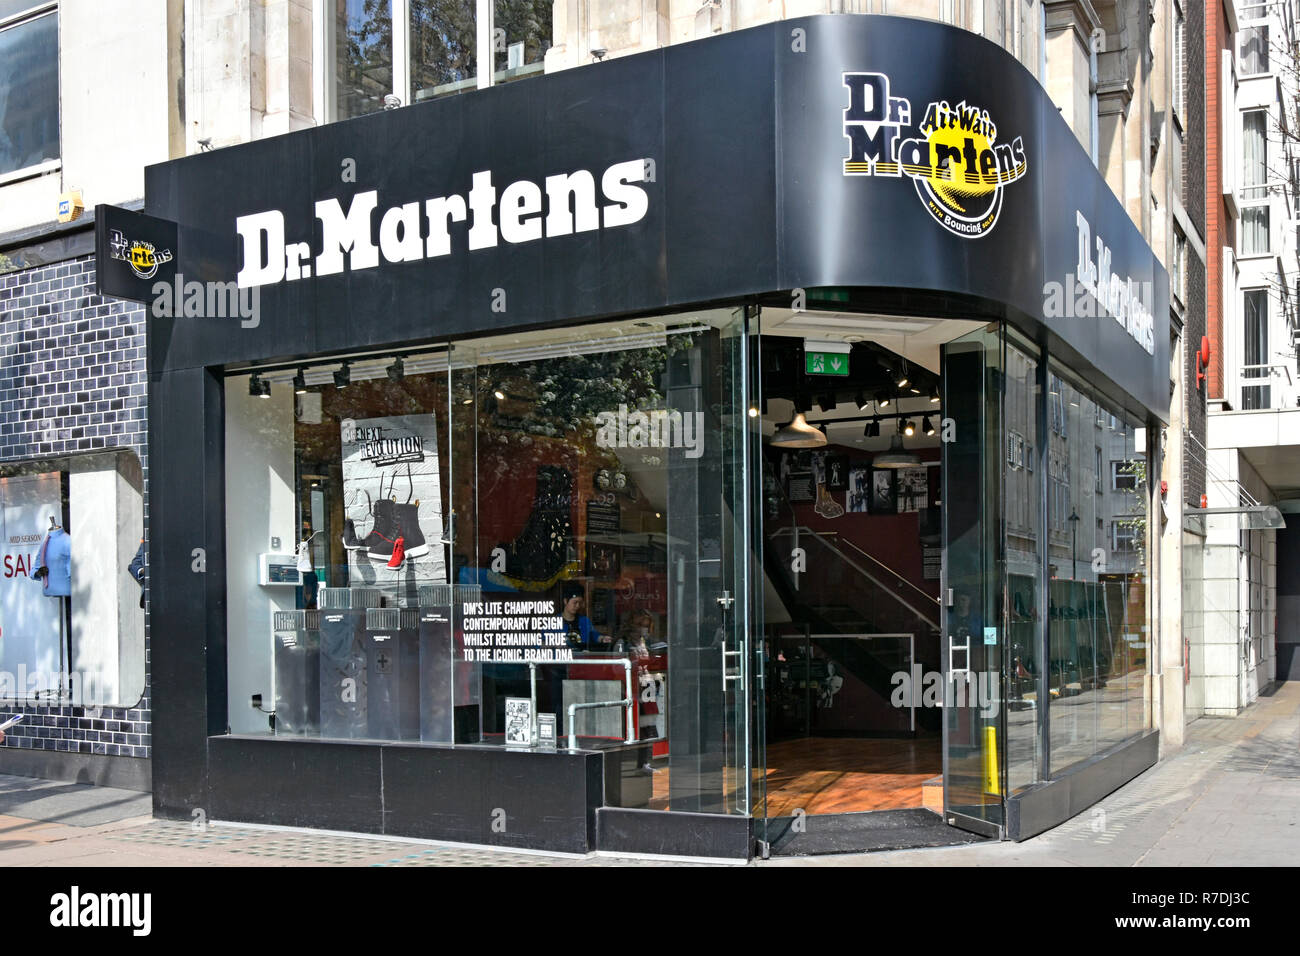 Dr. Martens o Doc Martens zapatero calzado y ropa tienda de zapatos marca la ventana delantera de la tienda que vende zapatos botas en Oxford Street, Londres, Inglaterra Foto de stock